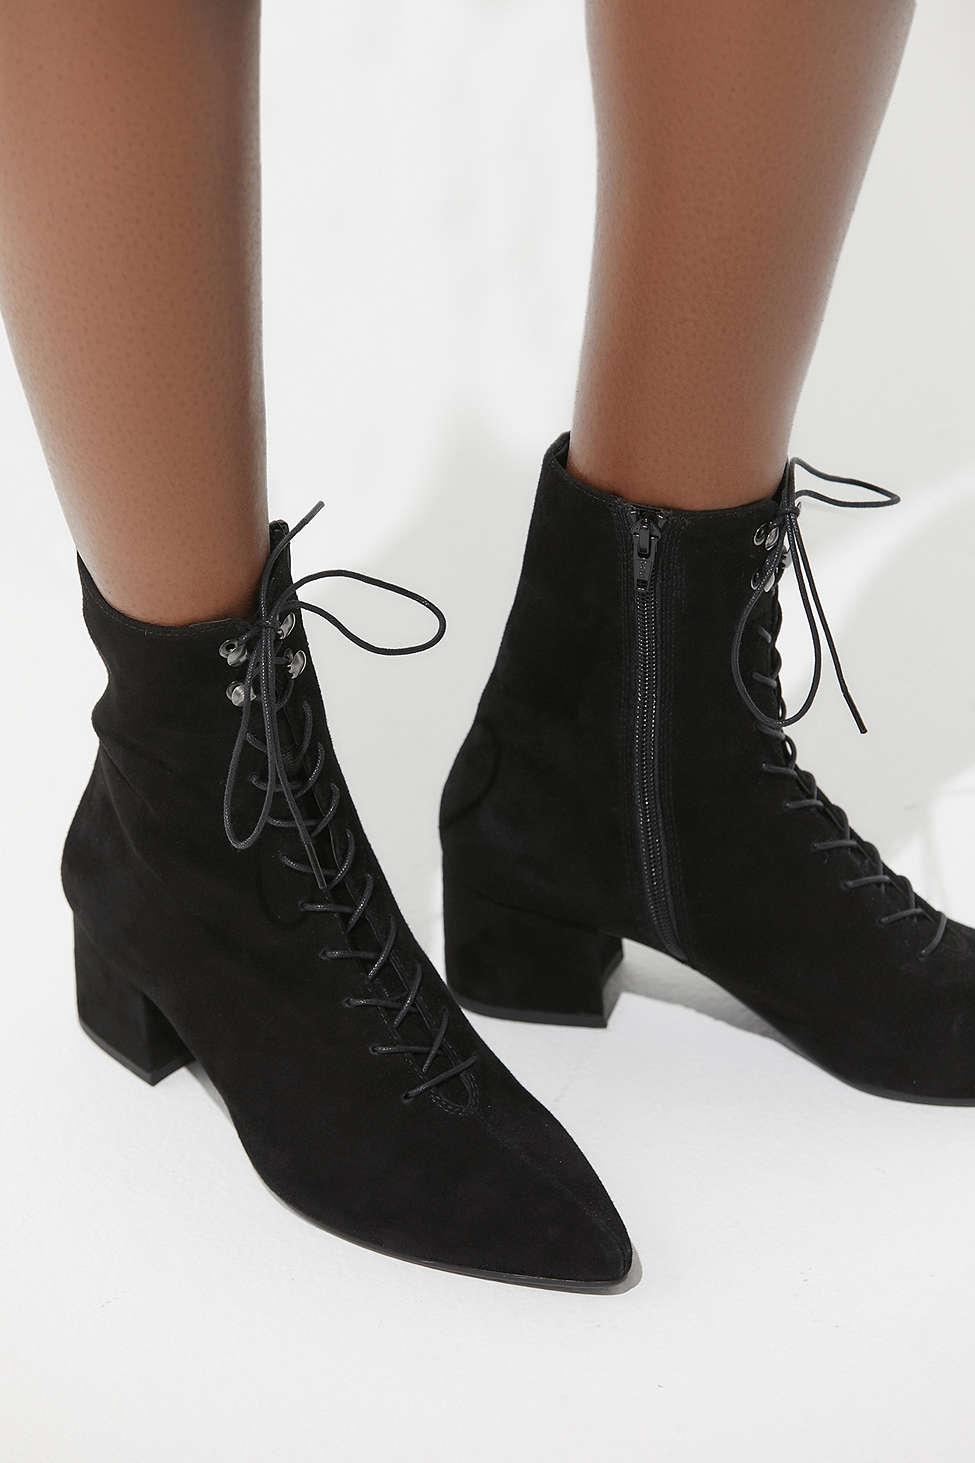 vagabond boots lace up